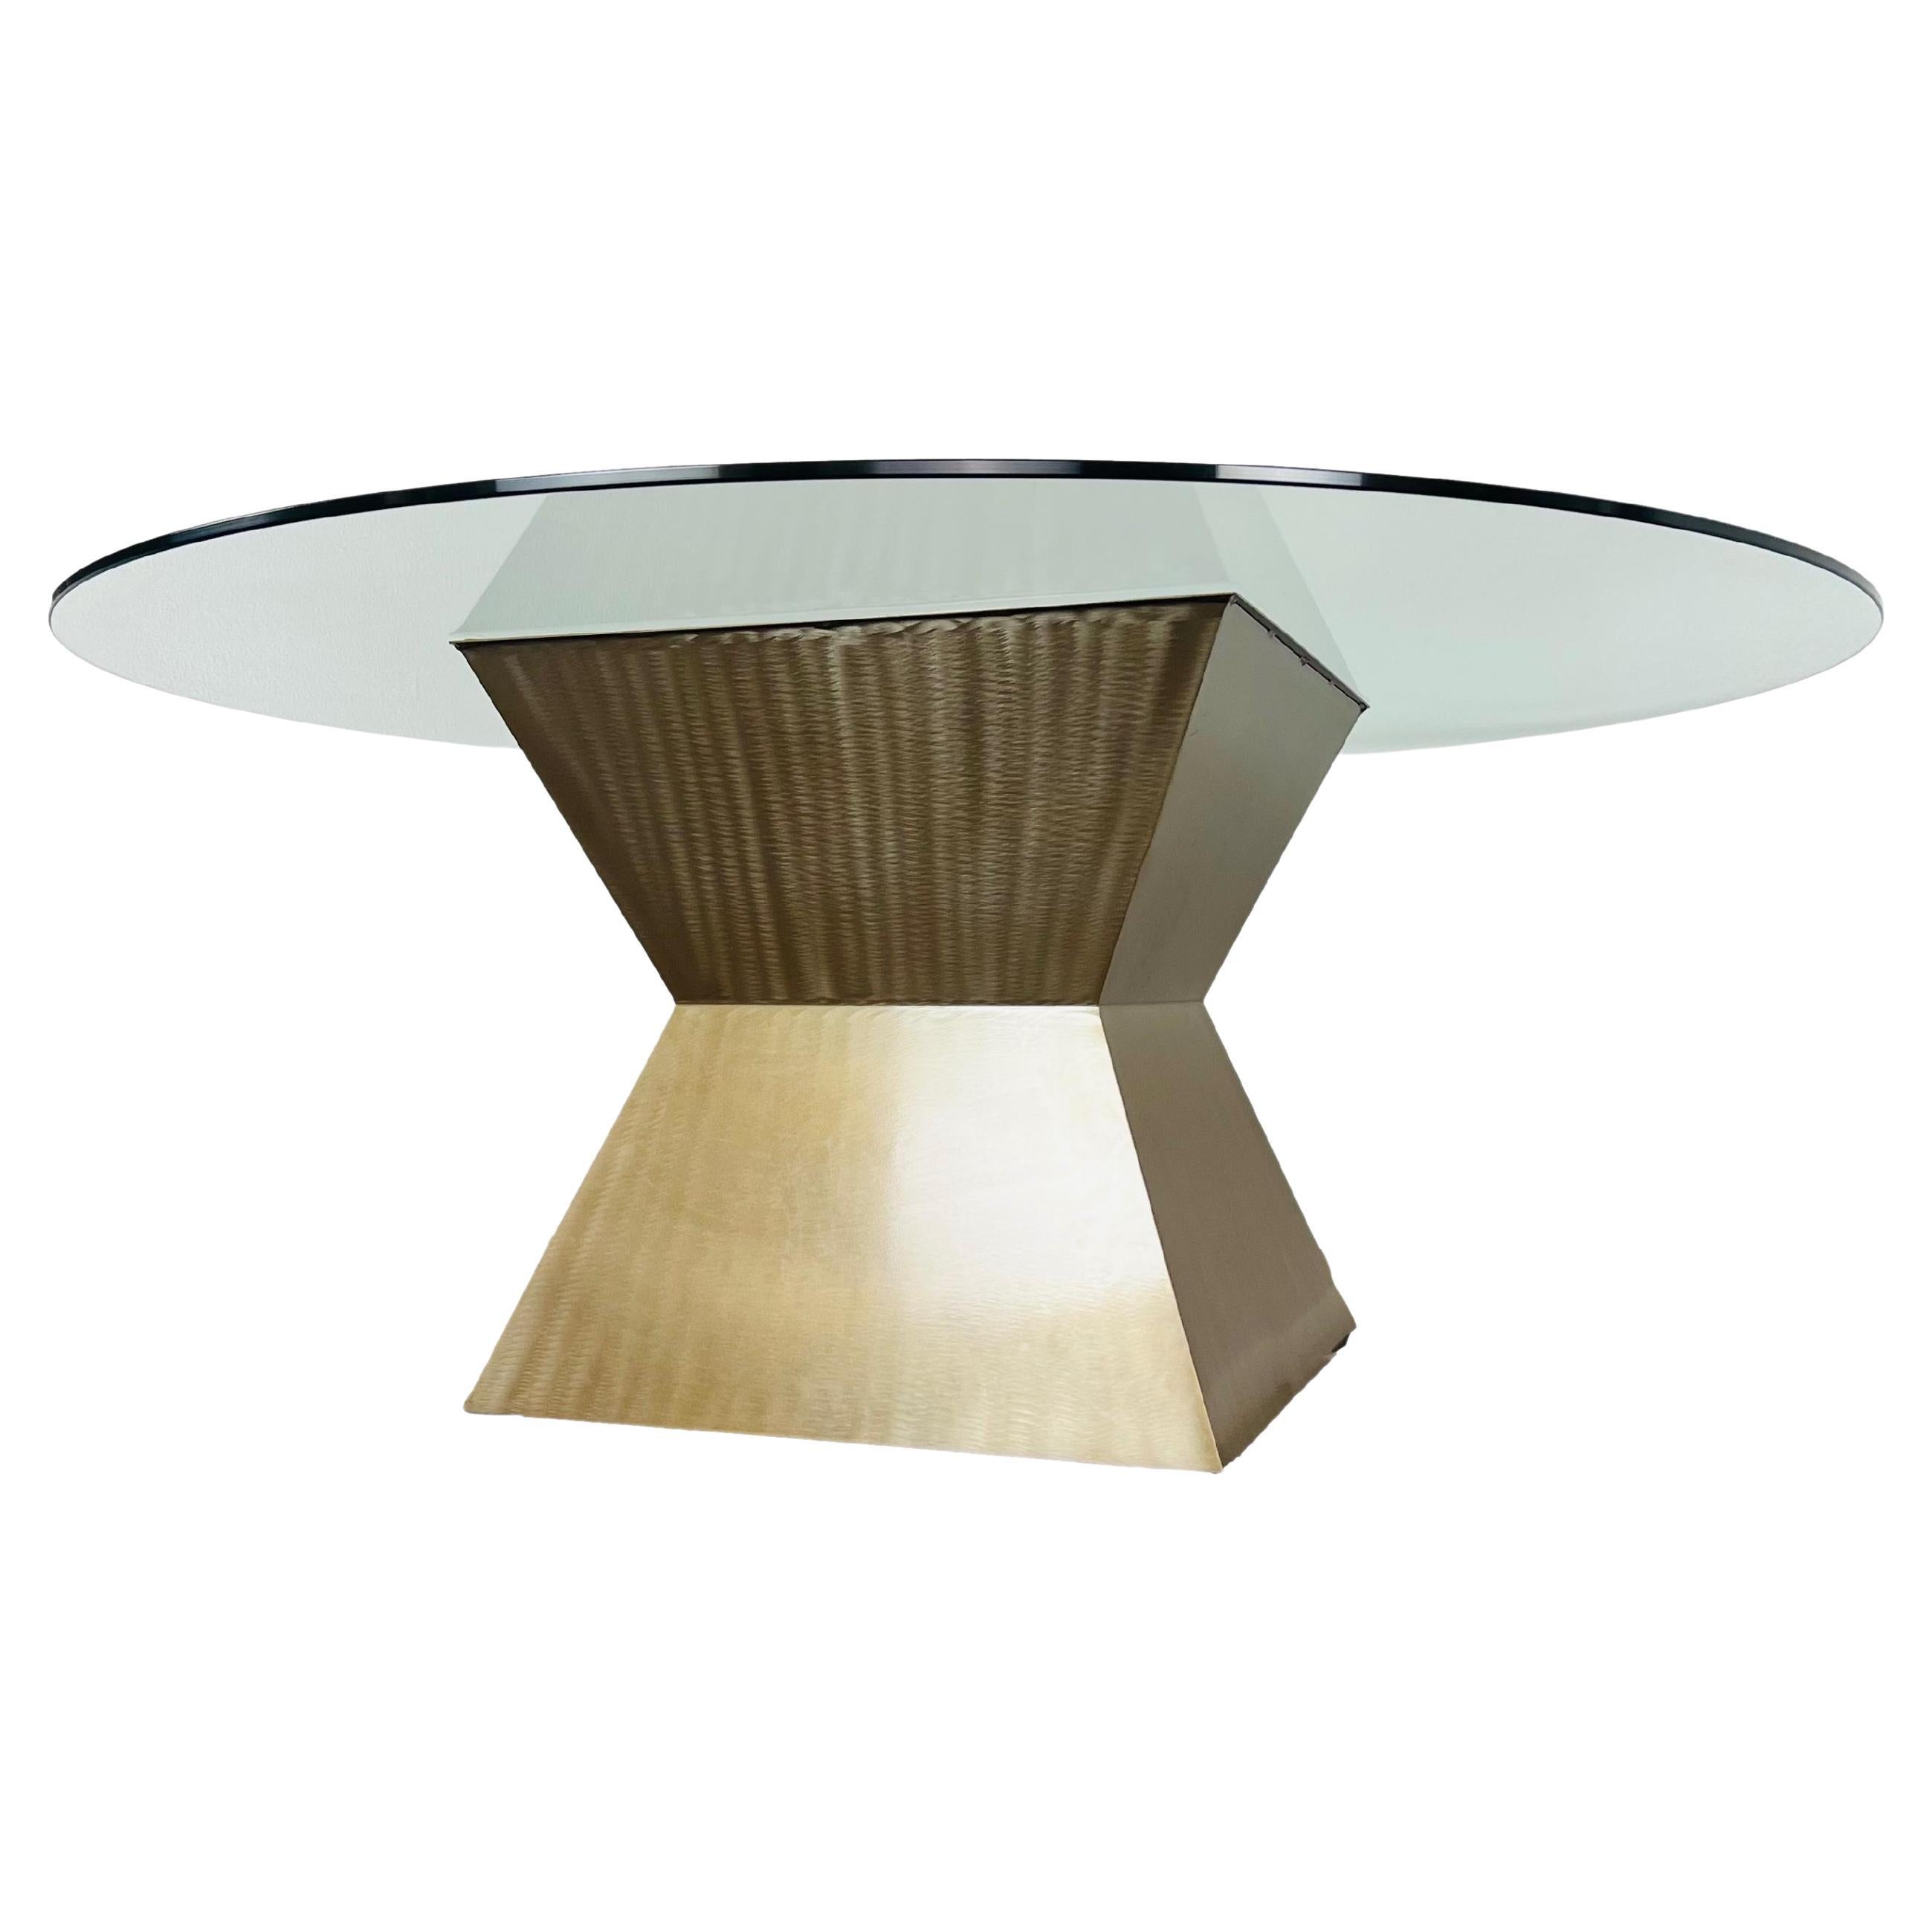 Geometric Metal Pedestal Base Dining Table